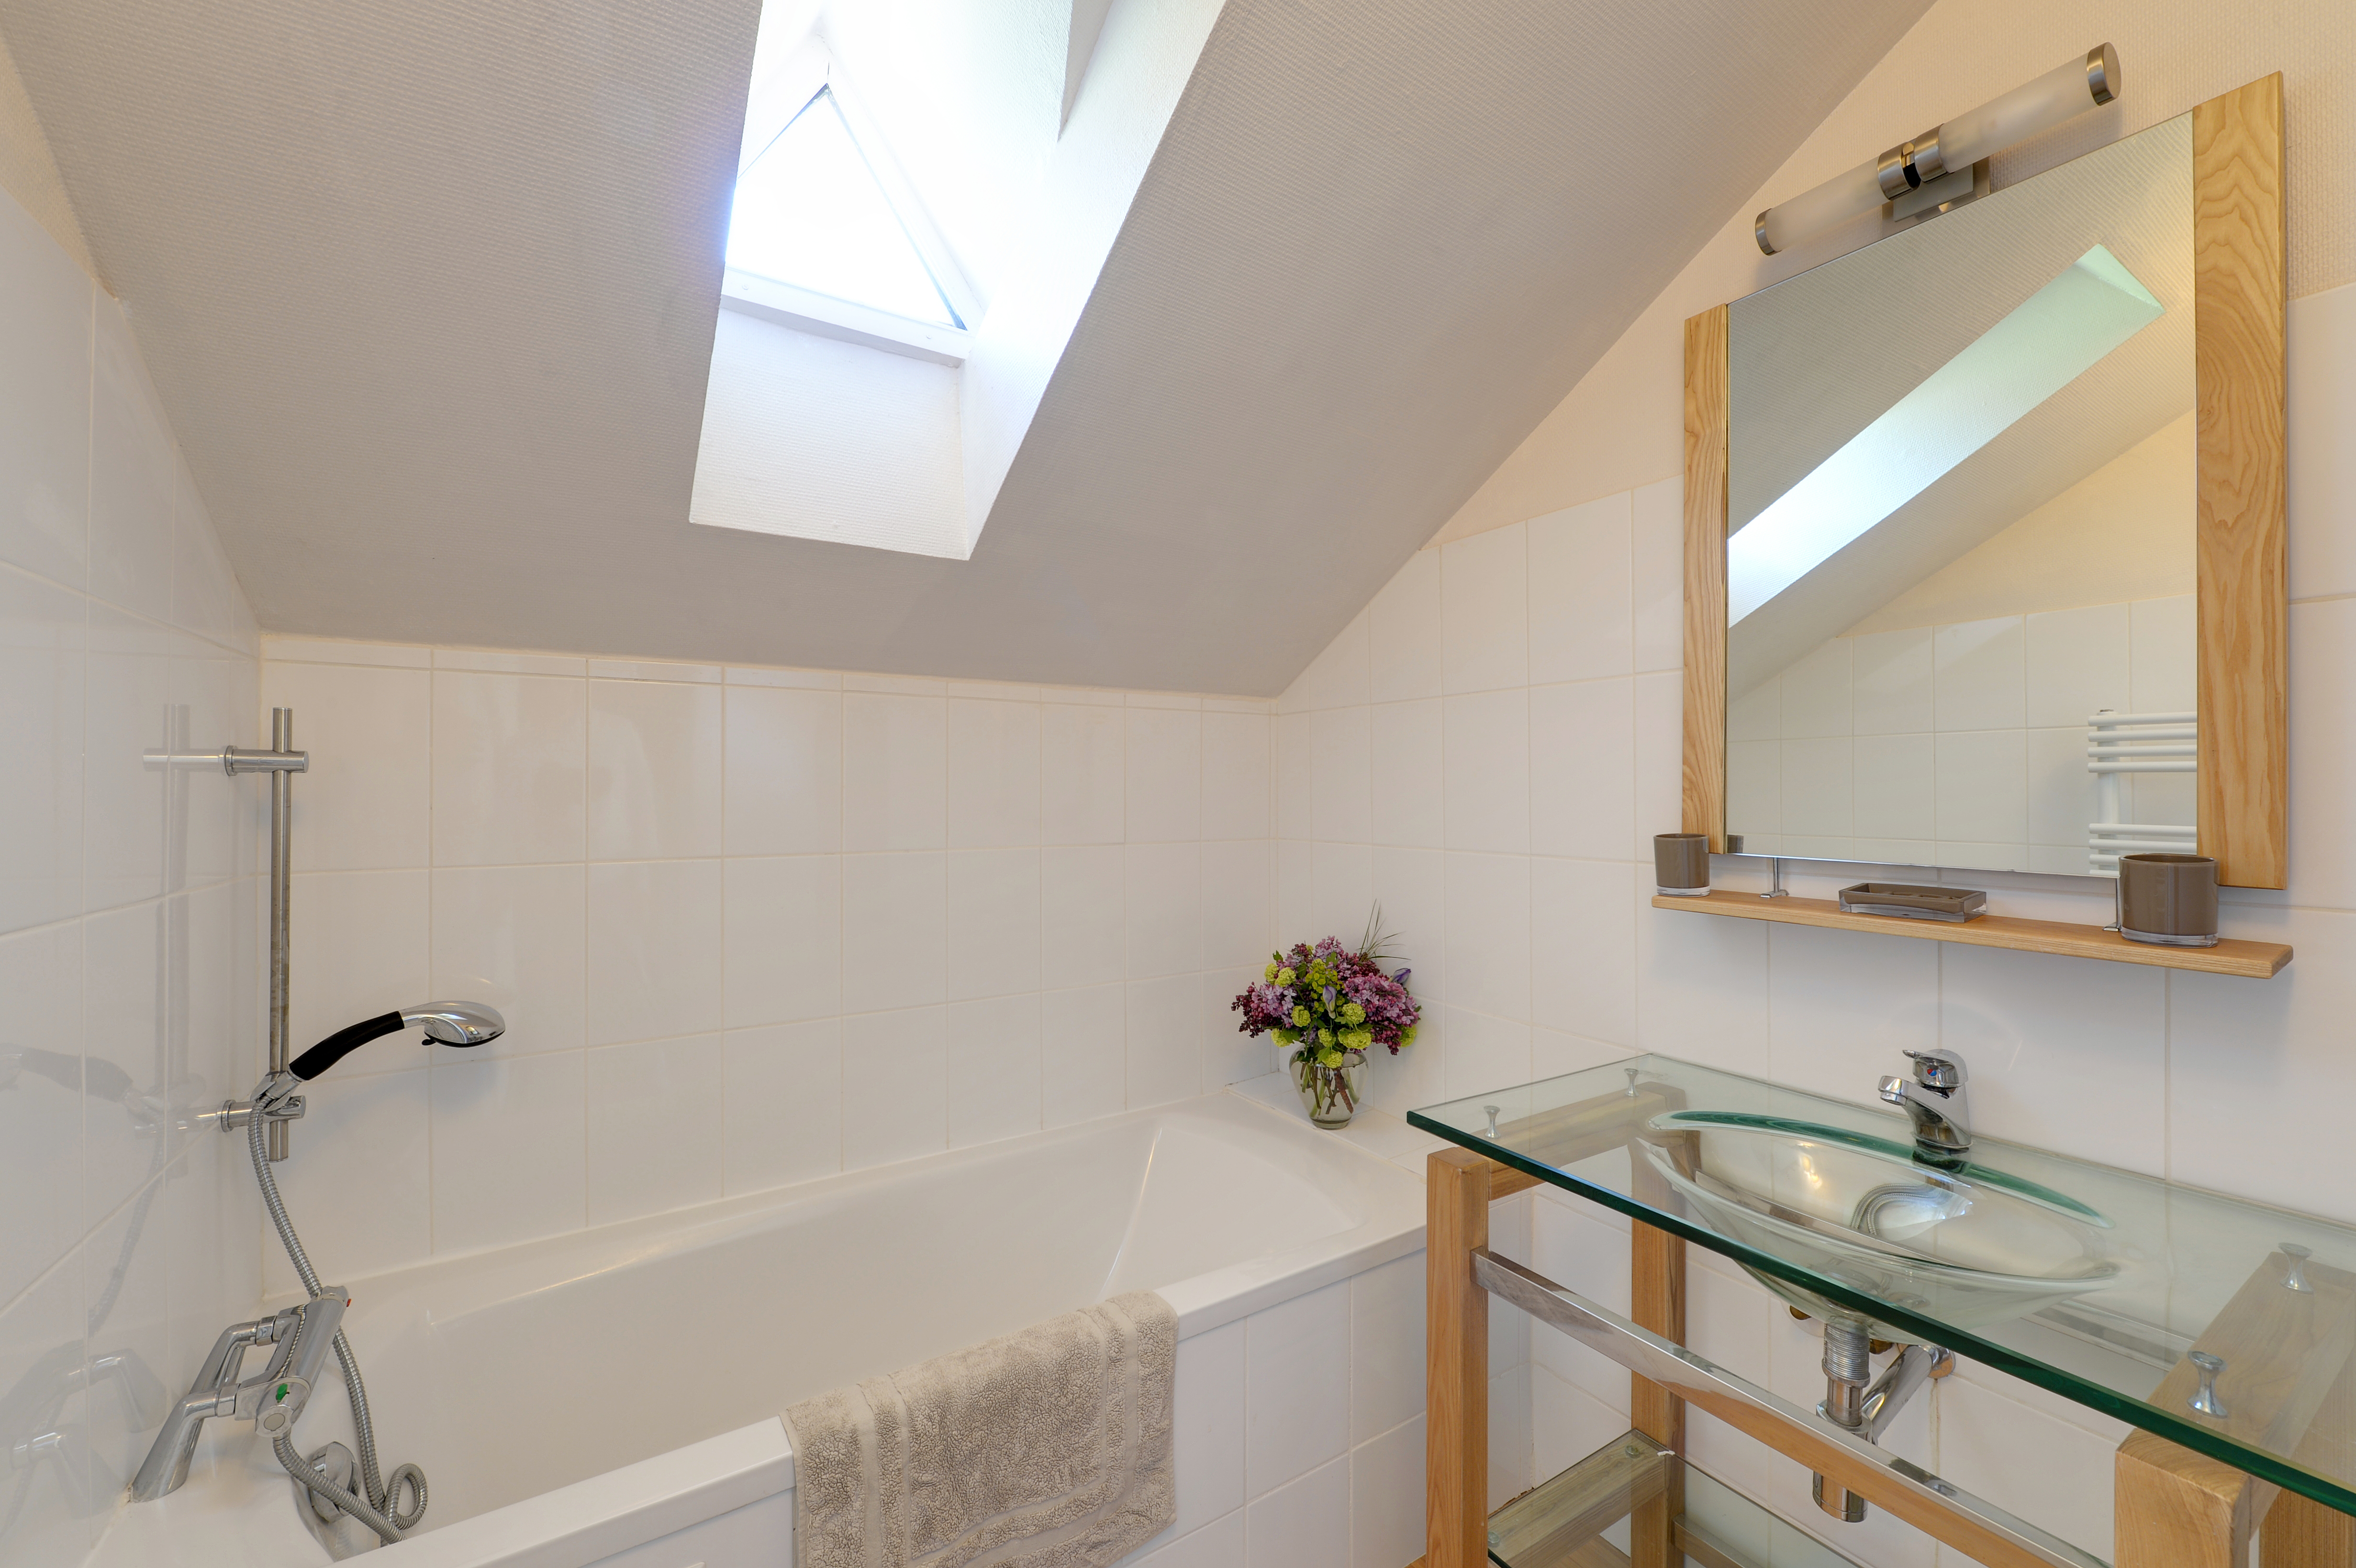 Salle de bain moderne avec baignoire et lumière naturelle venant du velux.